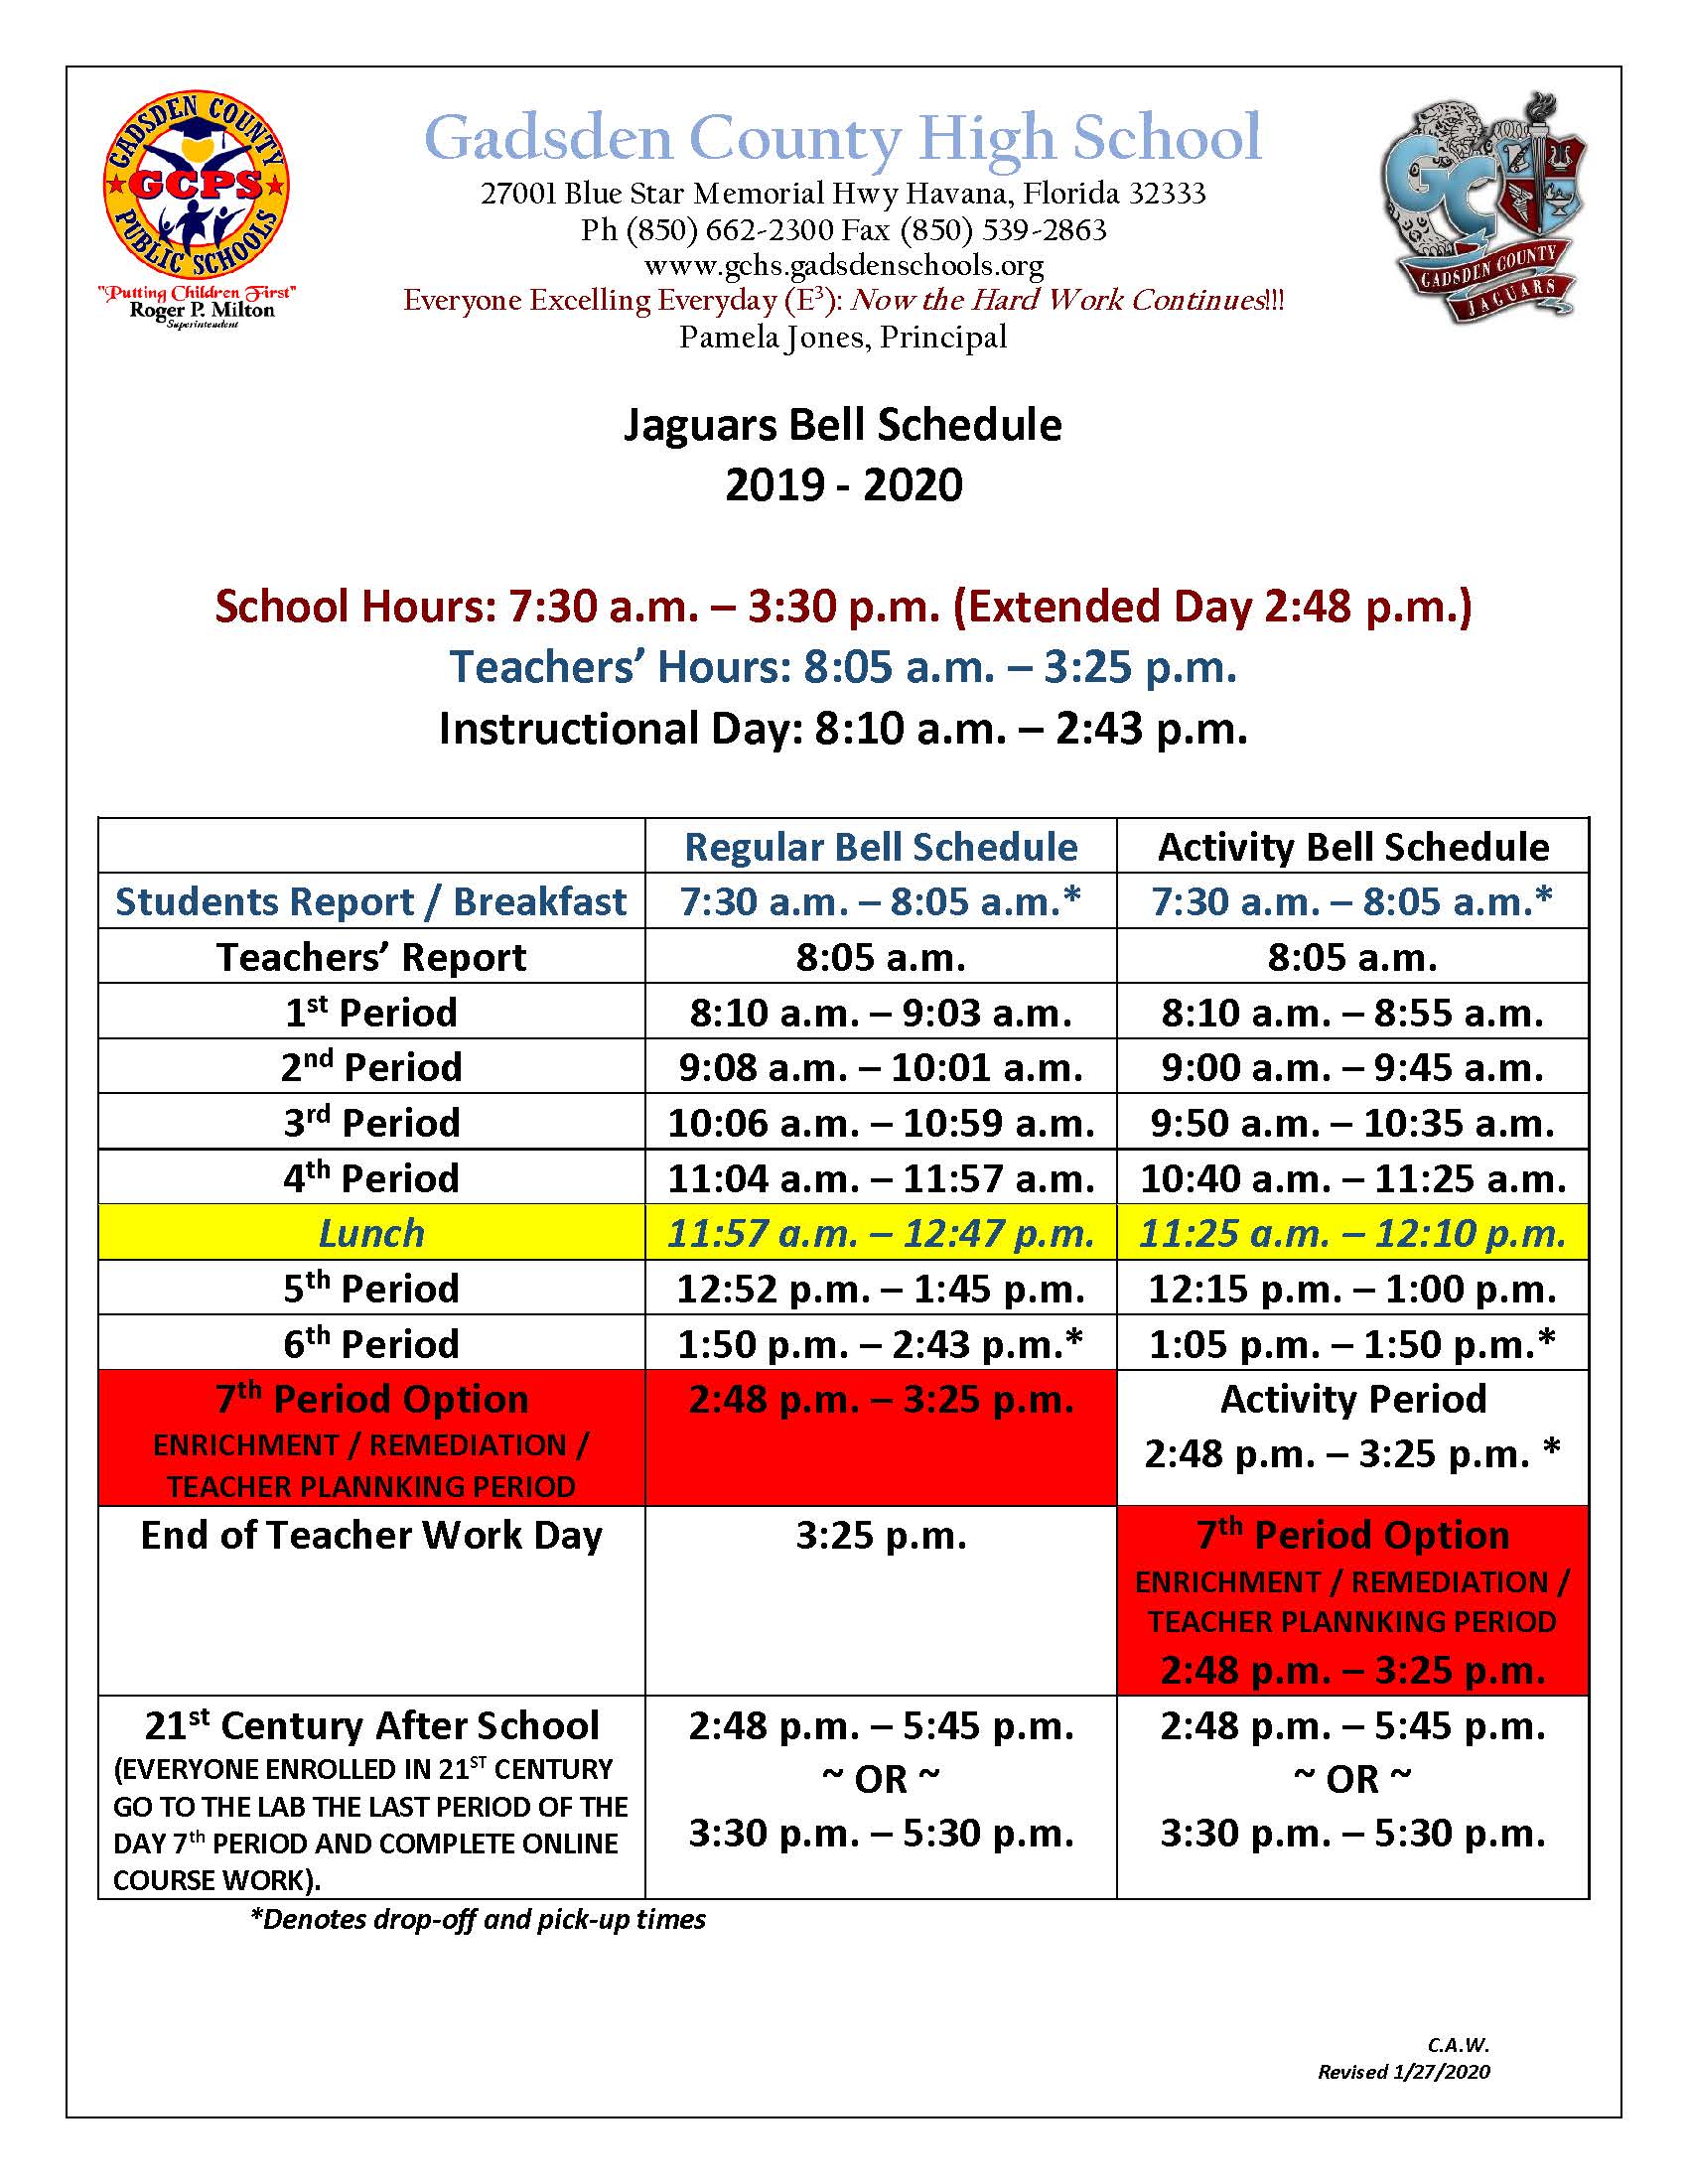 Gadsden County High School: Schedule